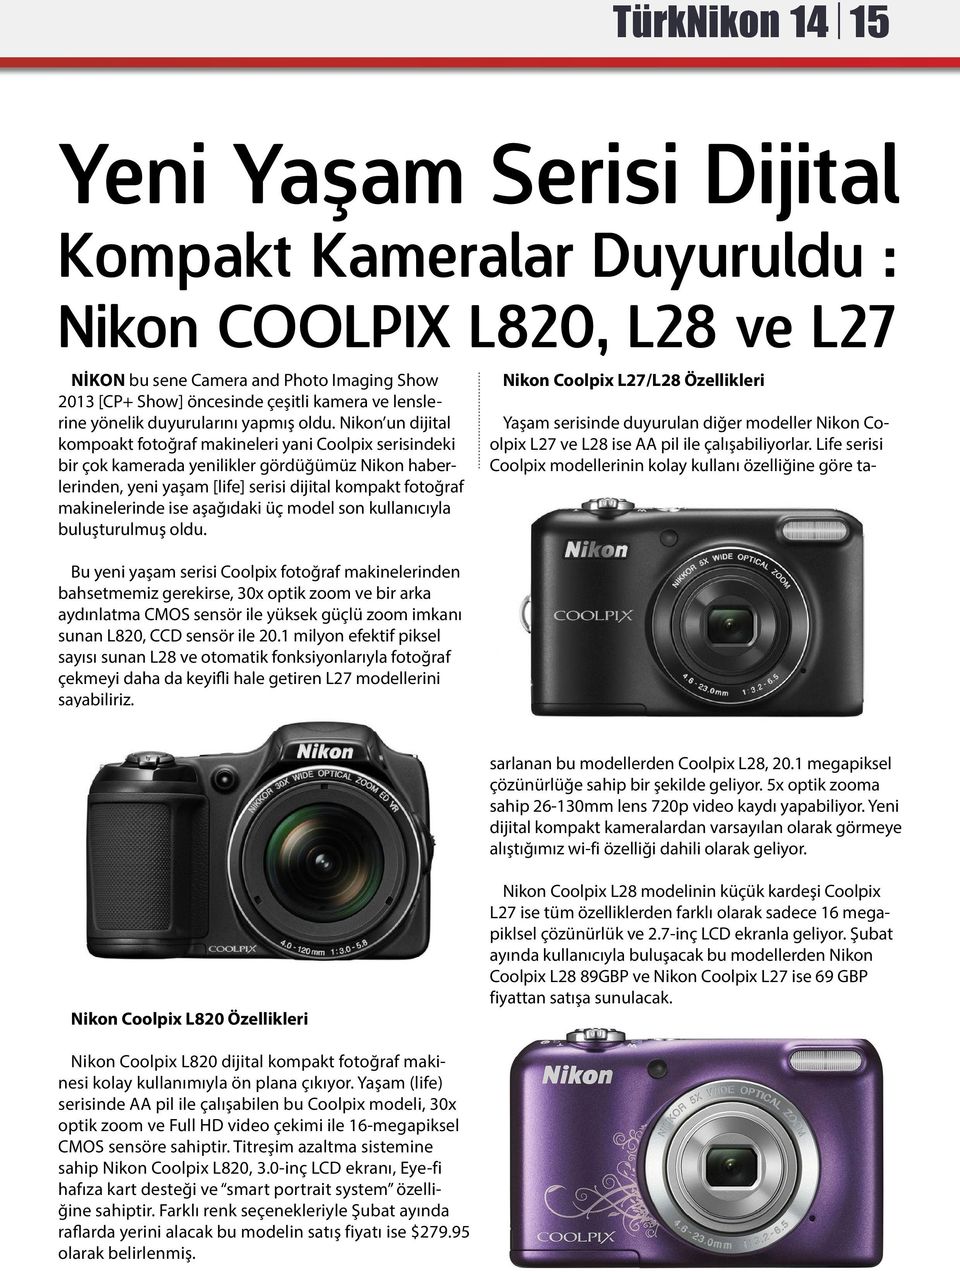 Nikon un dijital kompoakt fotoğraf makineleri yani Coolpix serisindeki bir çok kamerada yenilikler gördüğümüz Nikon haberlerinden, yeni yaşam [life] serisi dijital kompakt fotoğraf makinelerinde ise